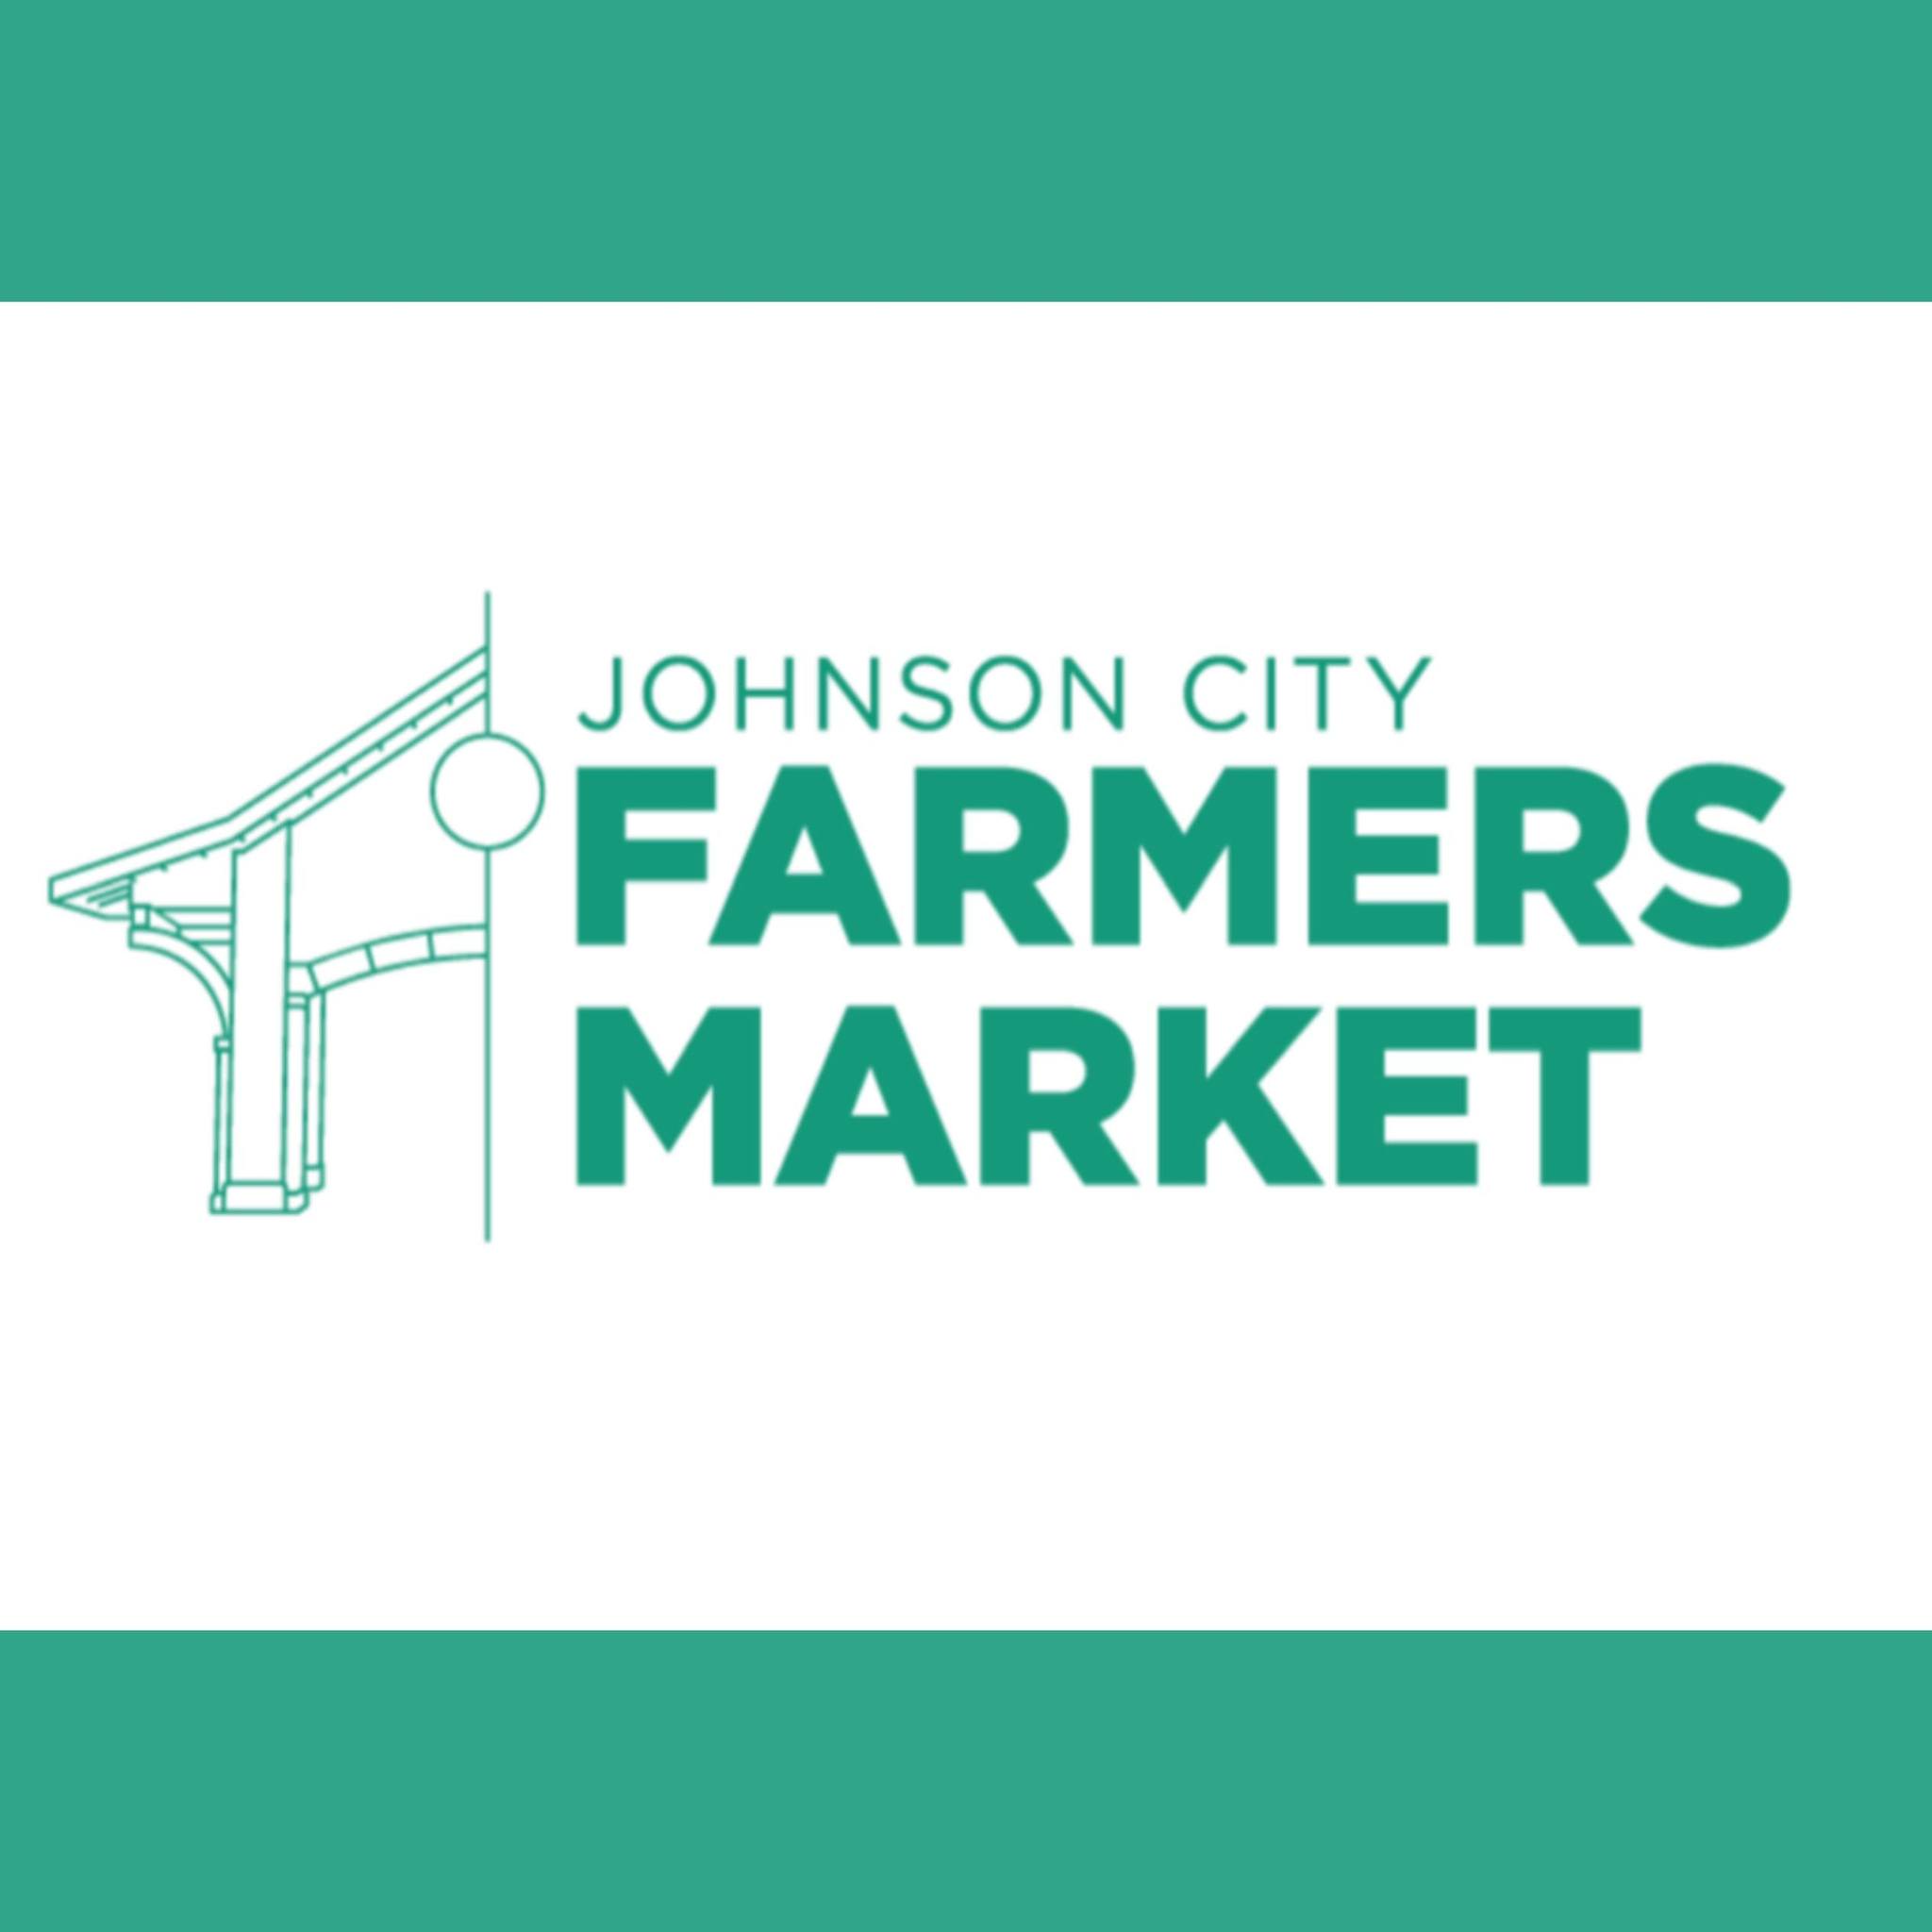 Johnson City Farmers Market